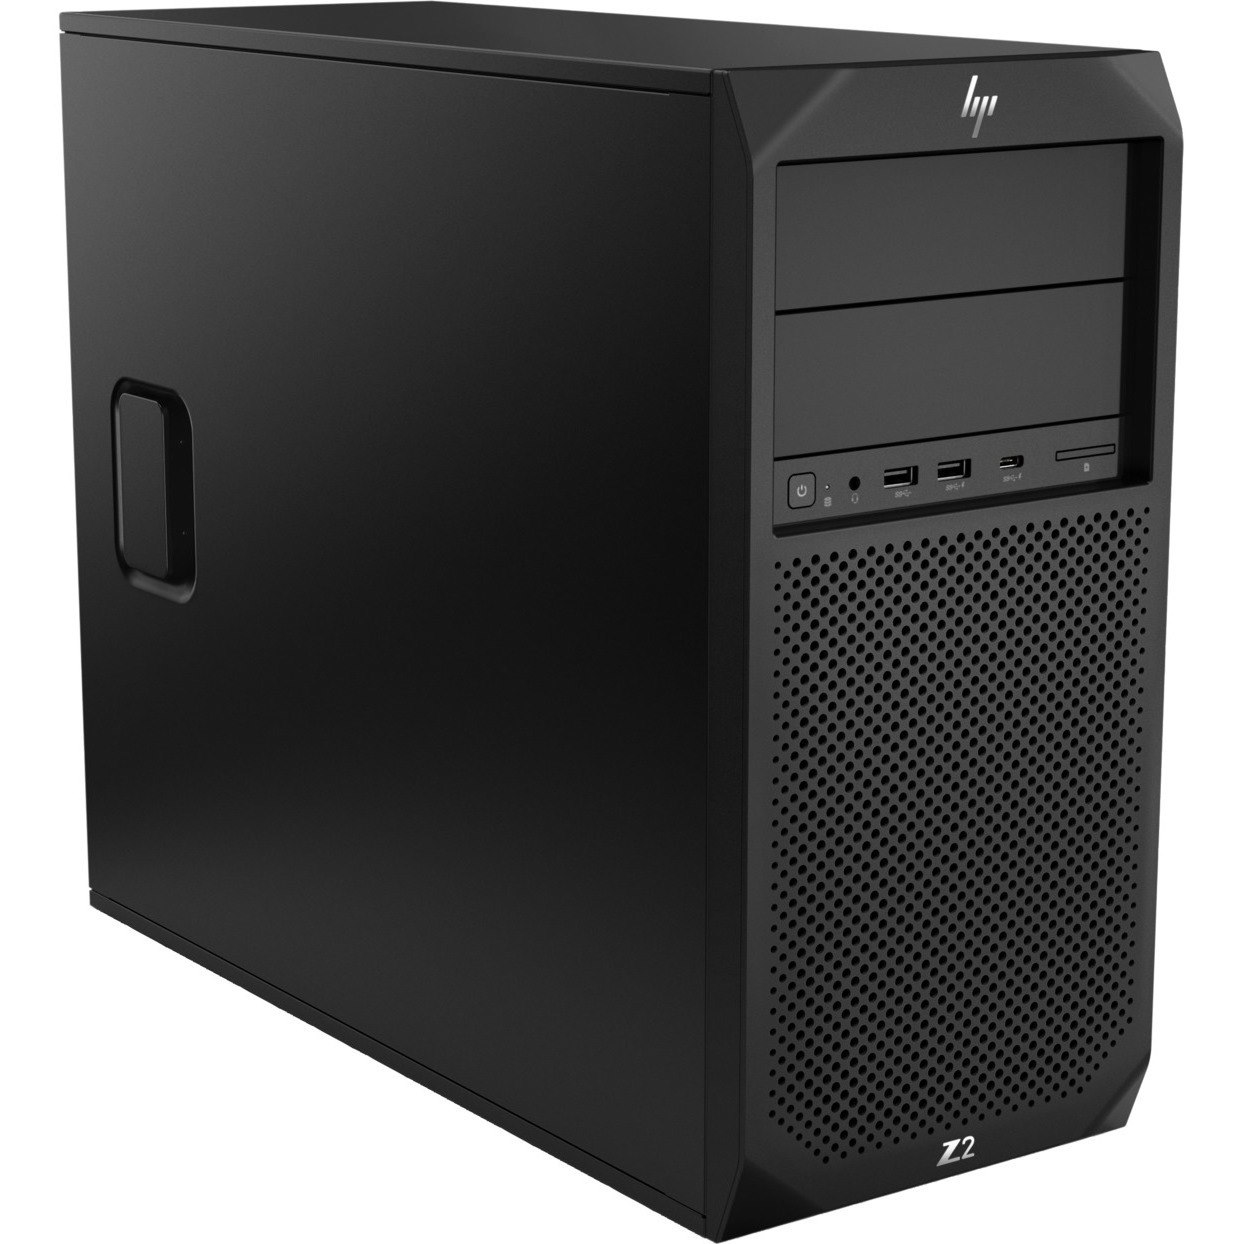 HP Z2 G4 Workstation - 1 x Intel Core i7 8th Gen i7-8700 - 16 GB - 512 GB SSD - Mini-tower - Black